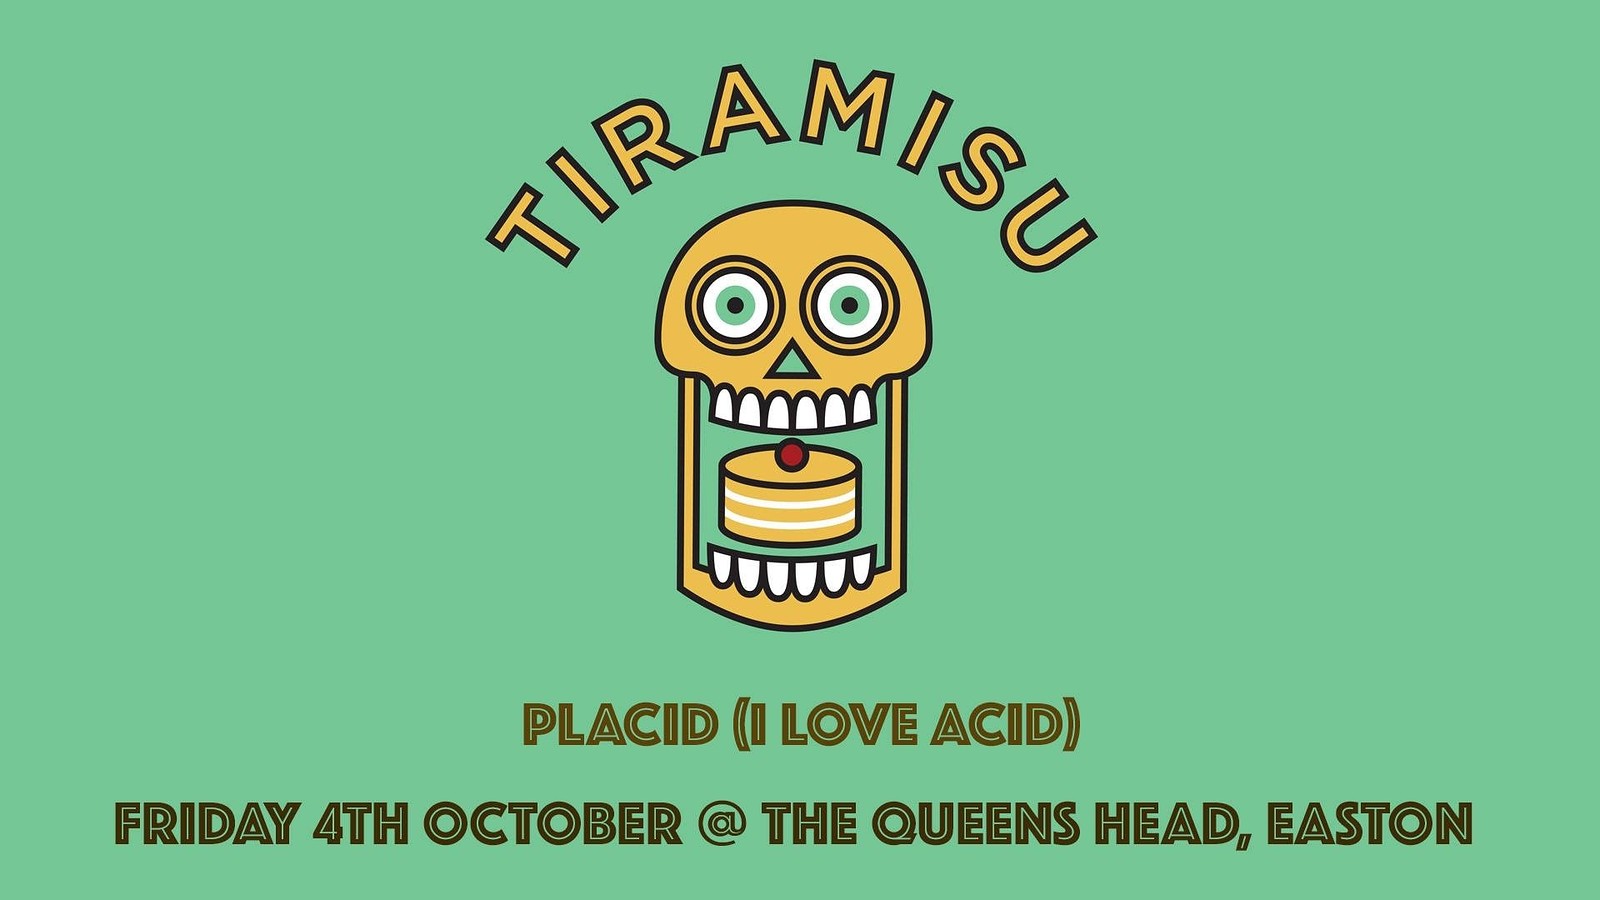 Tiramisu with Placid at Queens Head Easton